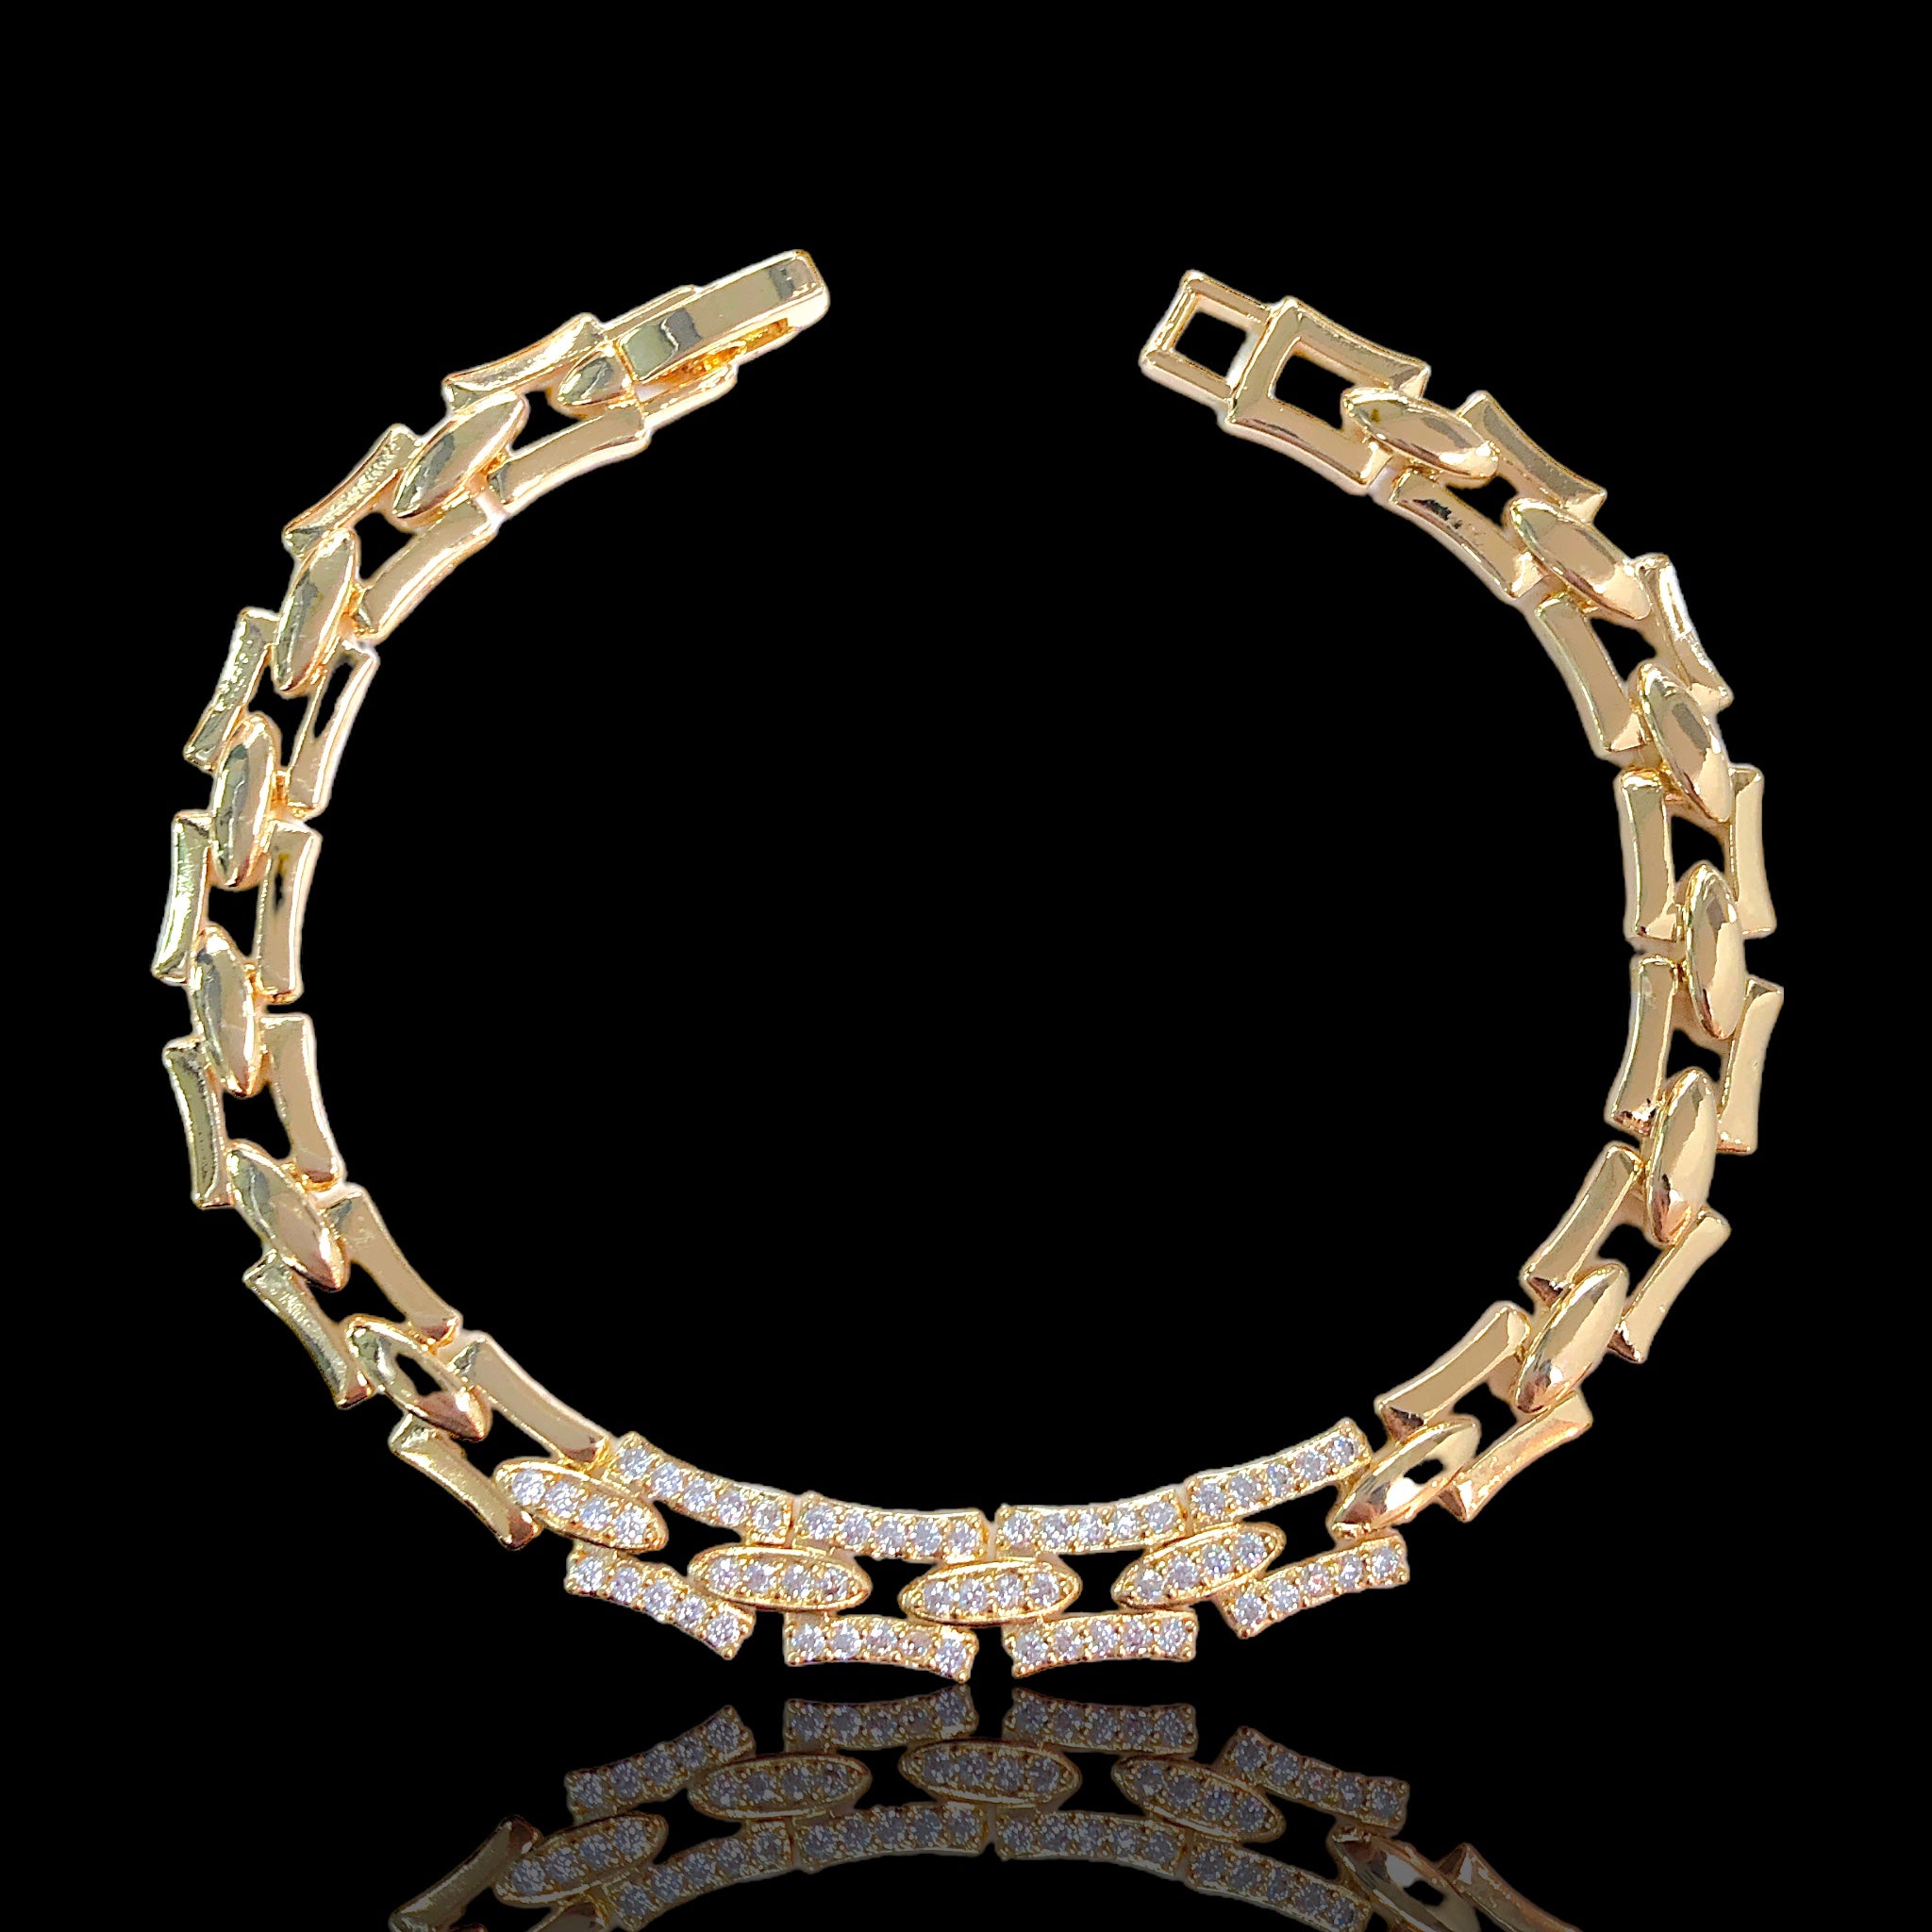 18k Gold Filled Geneva Link CZ Bracelet- kuania oro laminado